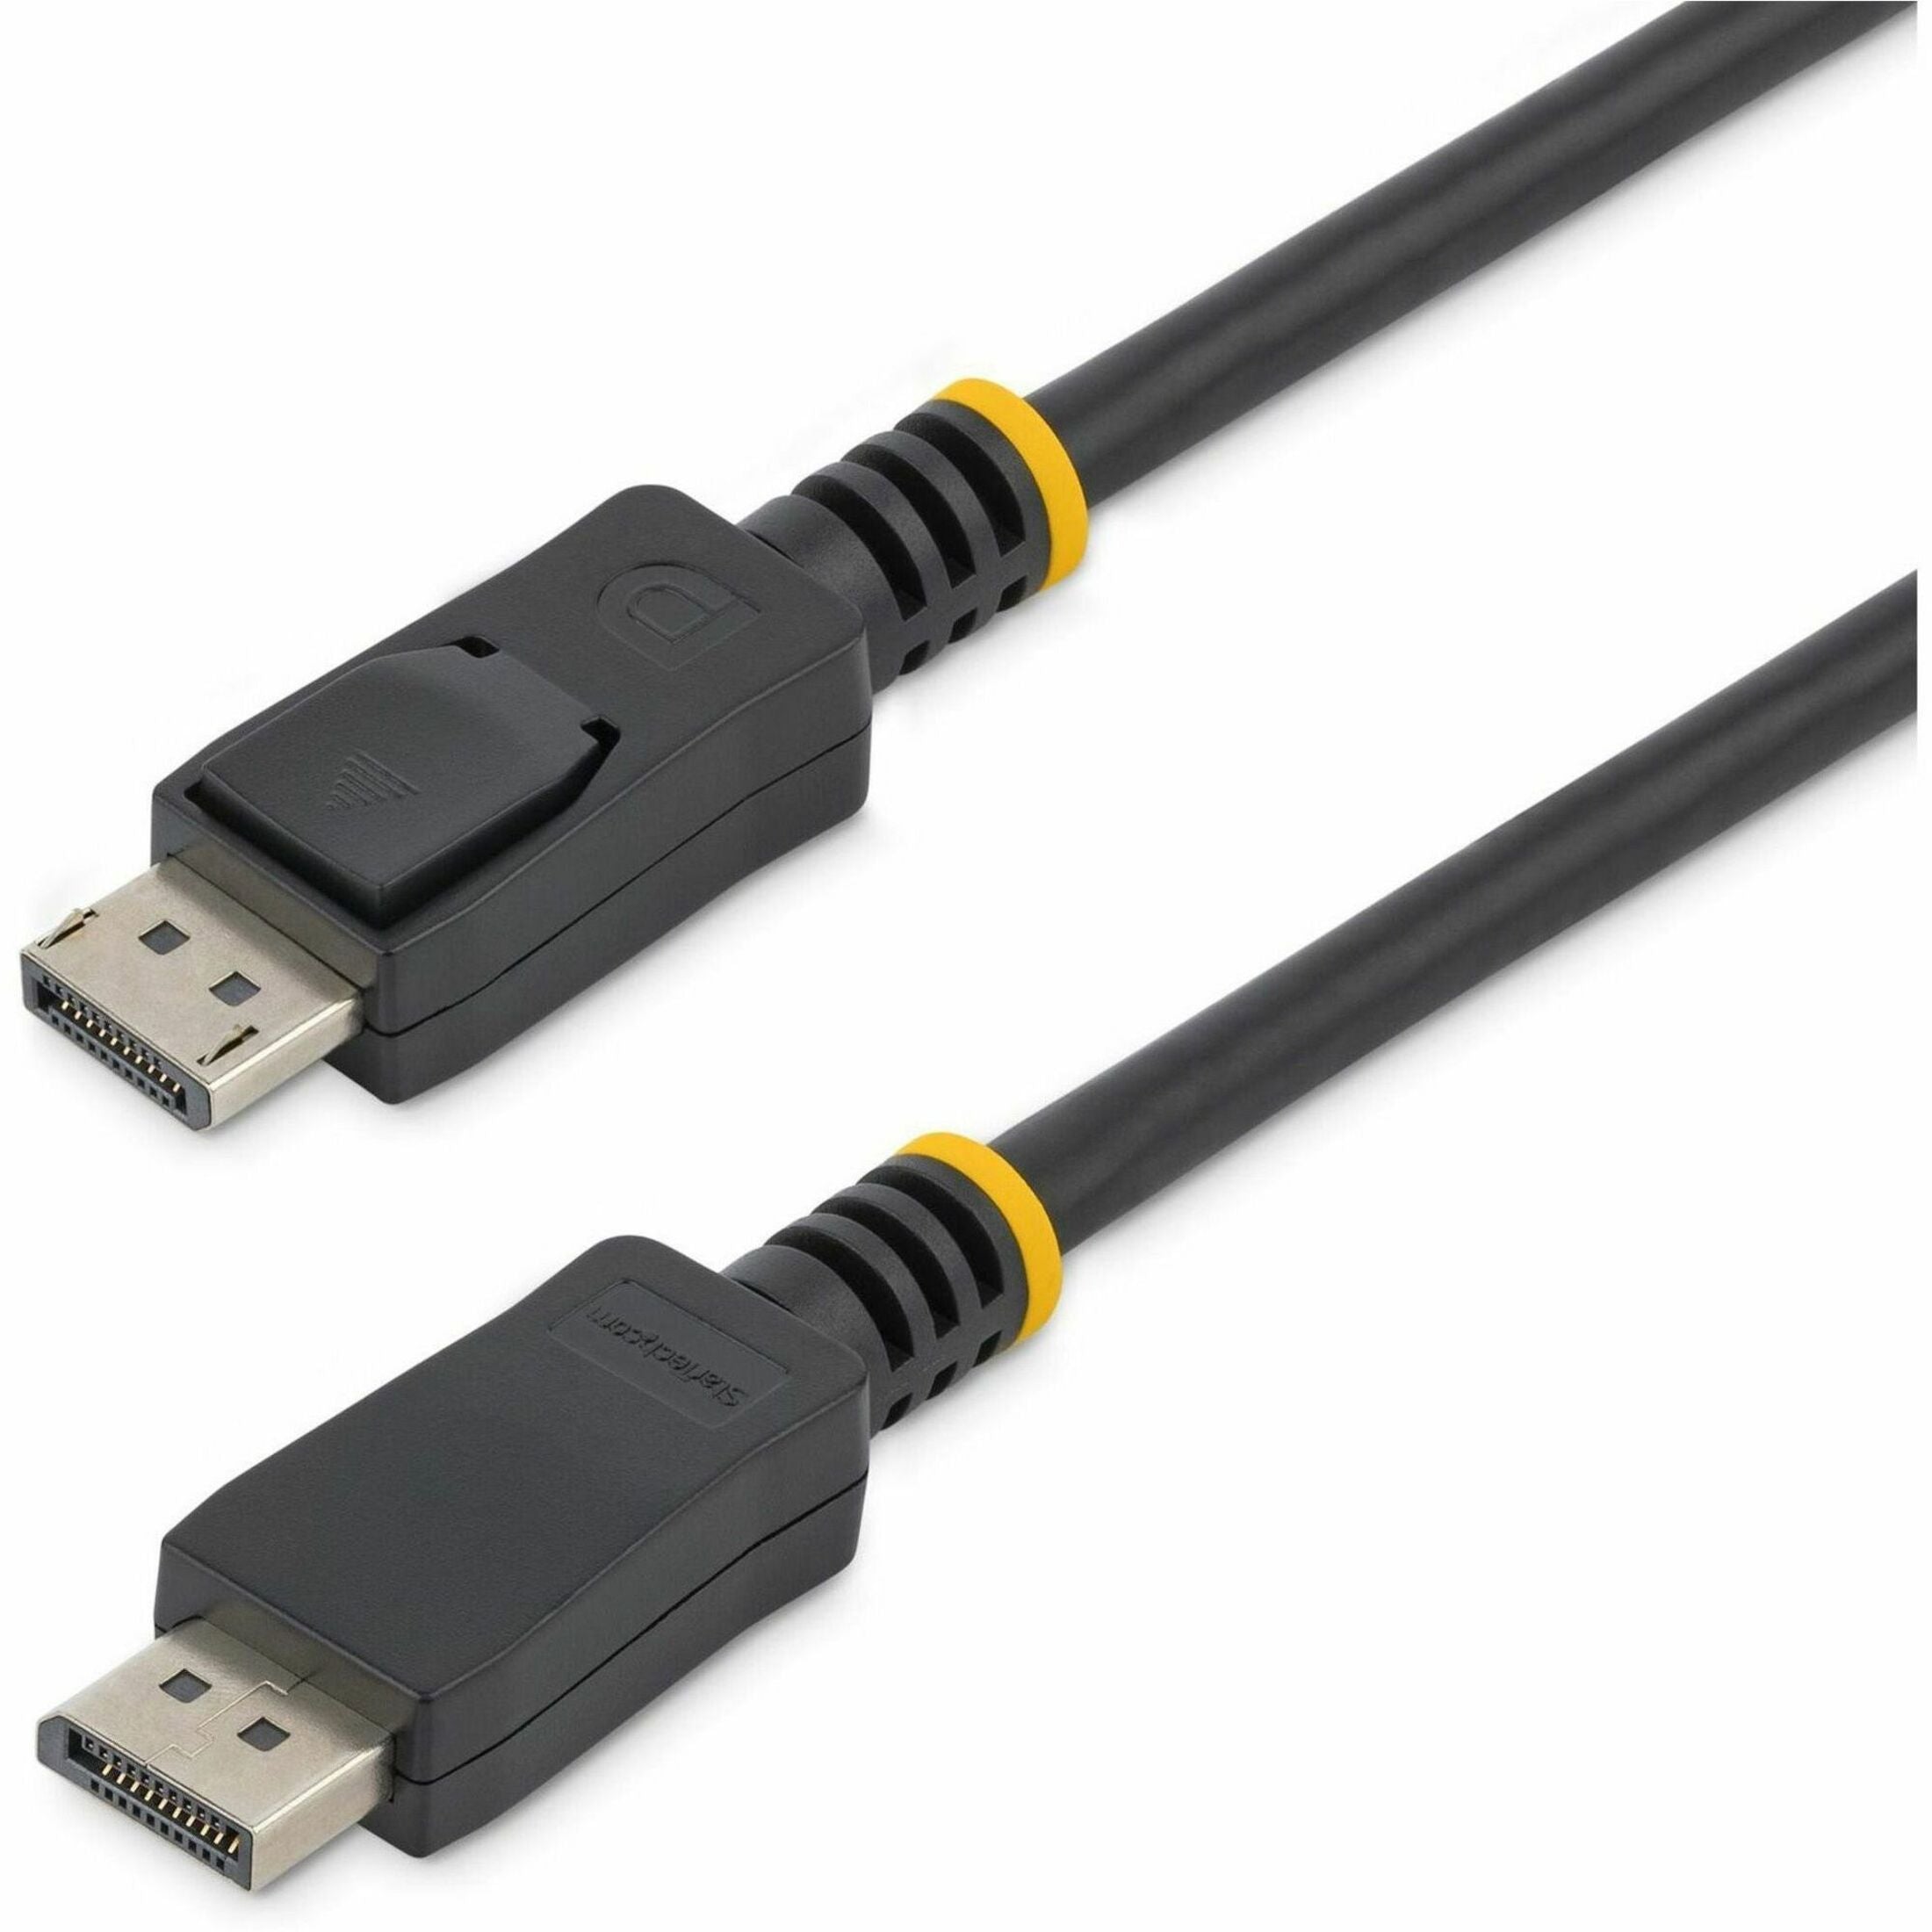 كابل فيديو 4k StarTech.com DISPLPORT1L بطول 1 قدم مع قفل DisplayPort 1.2 M/M اسم العلامة التجارية: StarTech.com